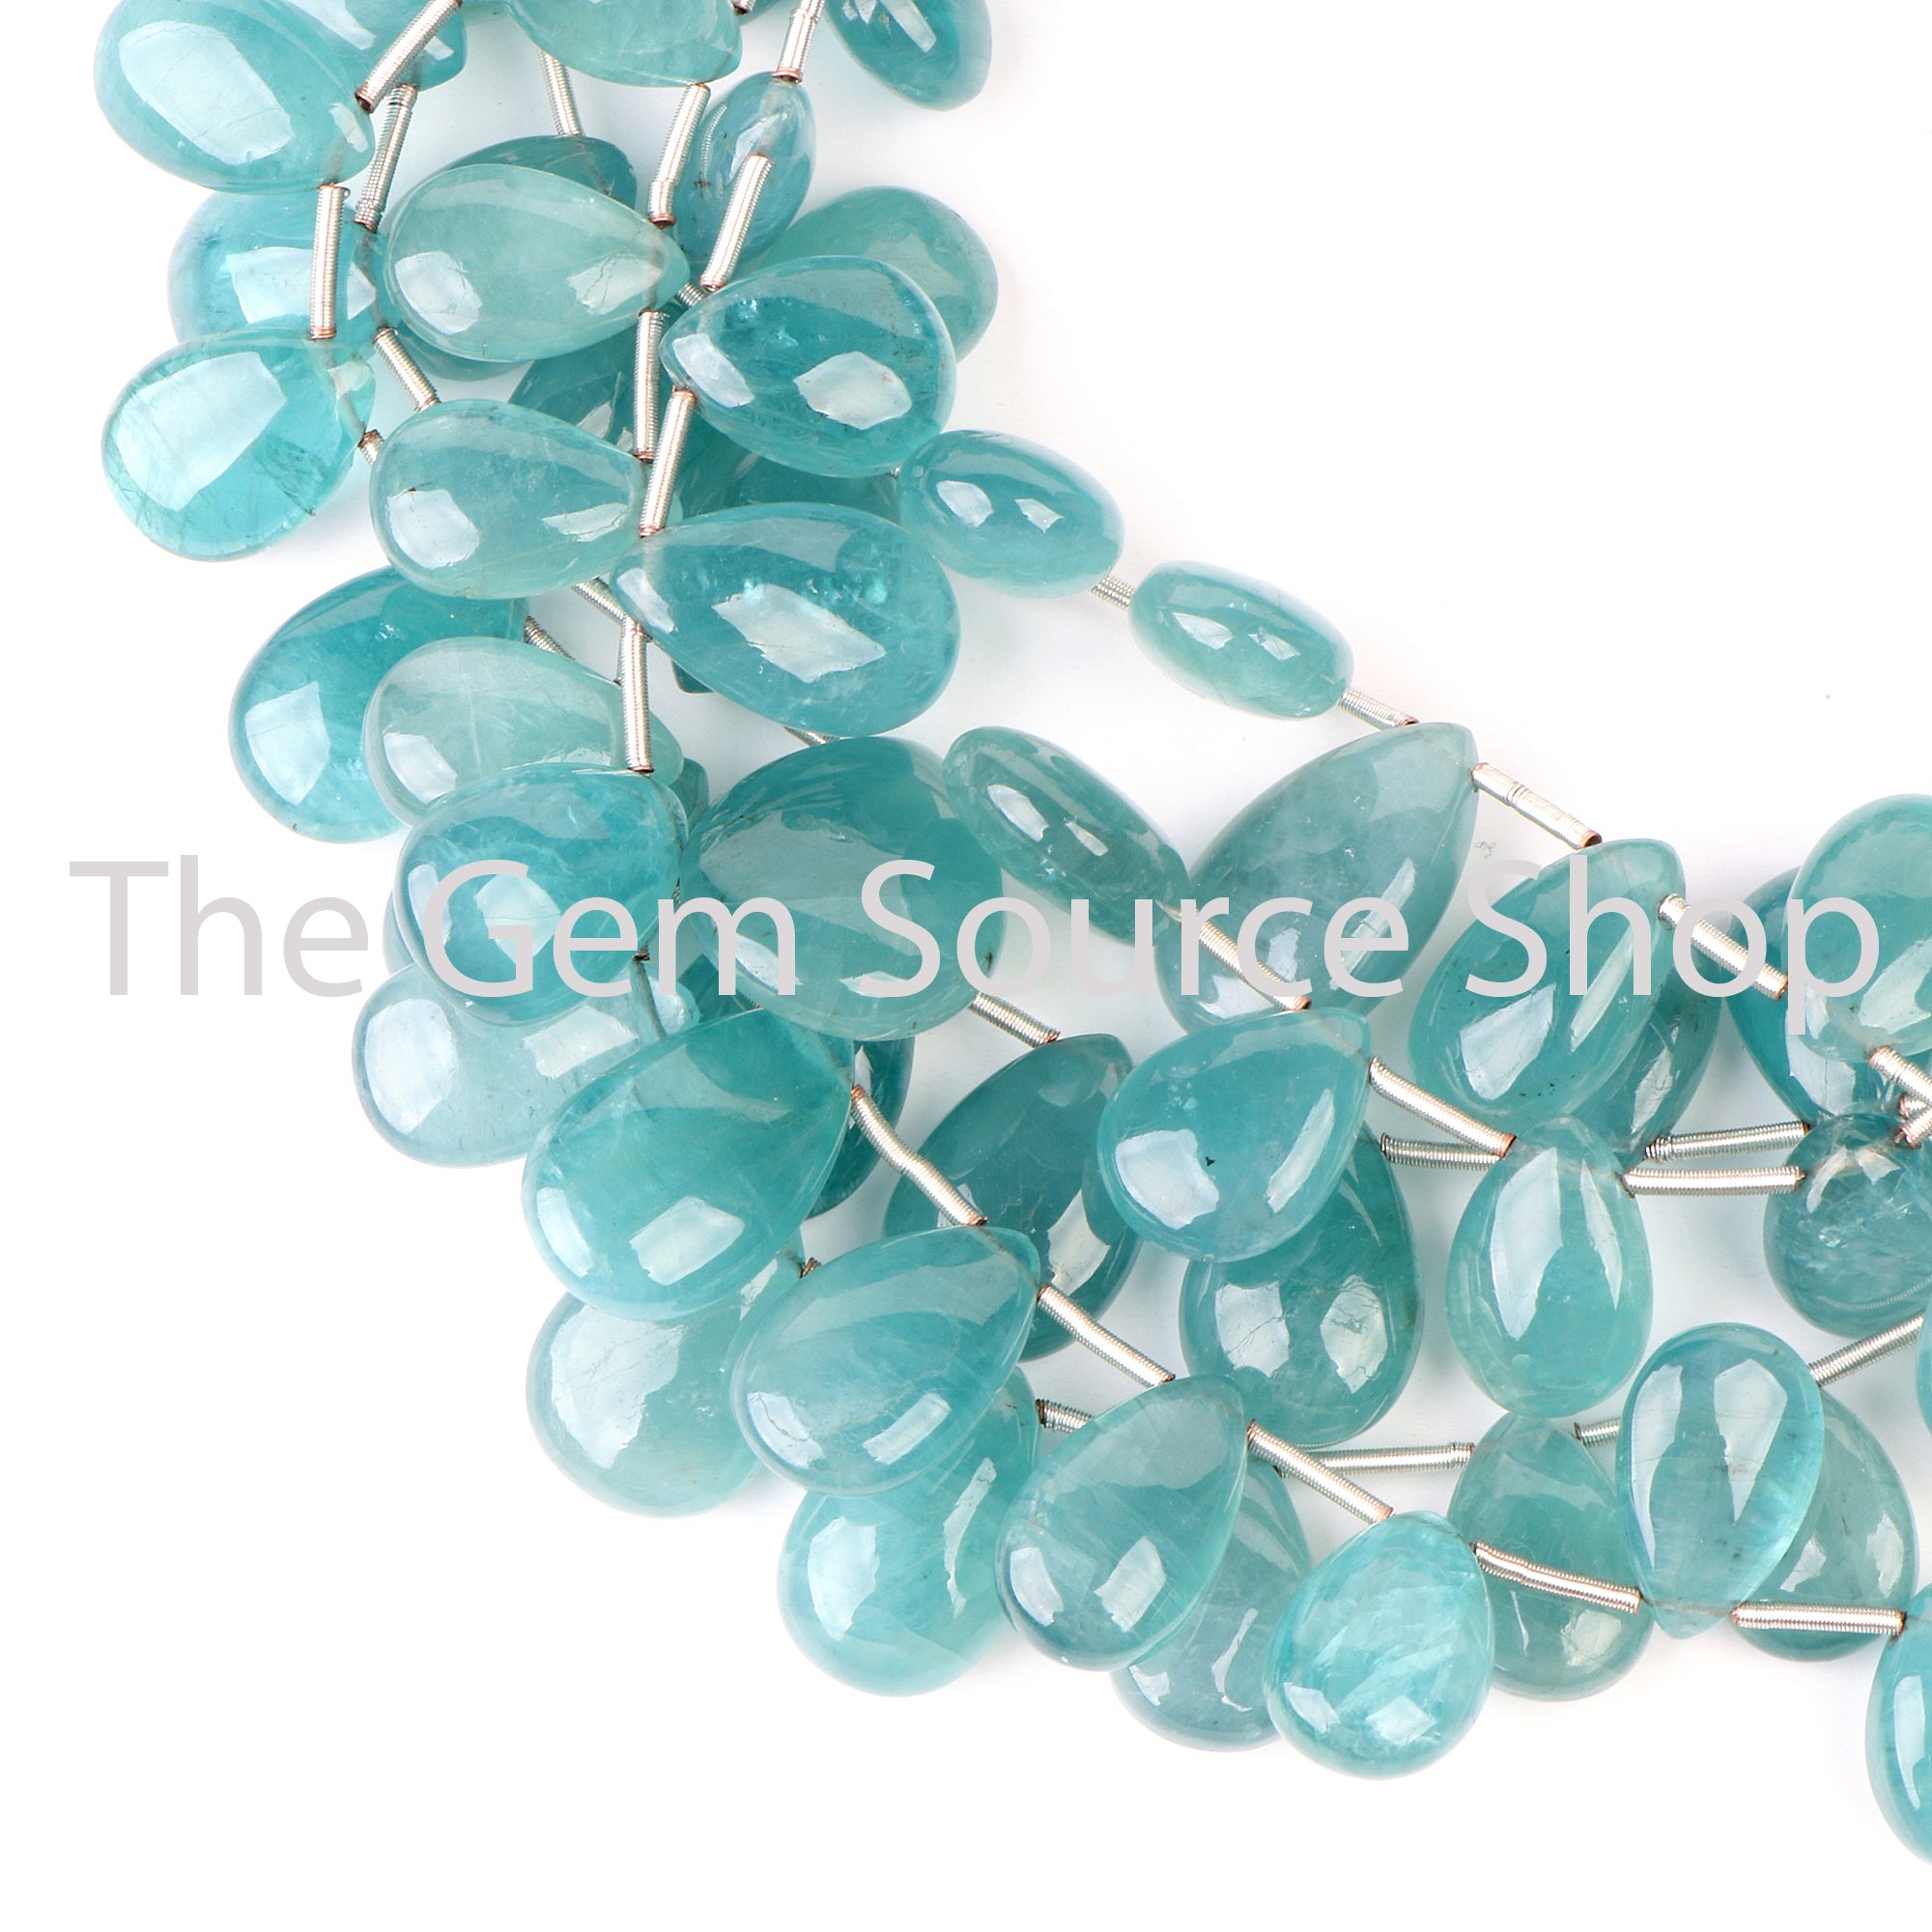 Rare Grandidierite Beads, Grandidierite Pear Shape Beads, Grandidierite Smooth Beads, Grandidierite Gemstone Beads